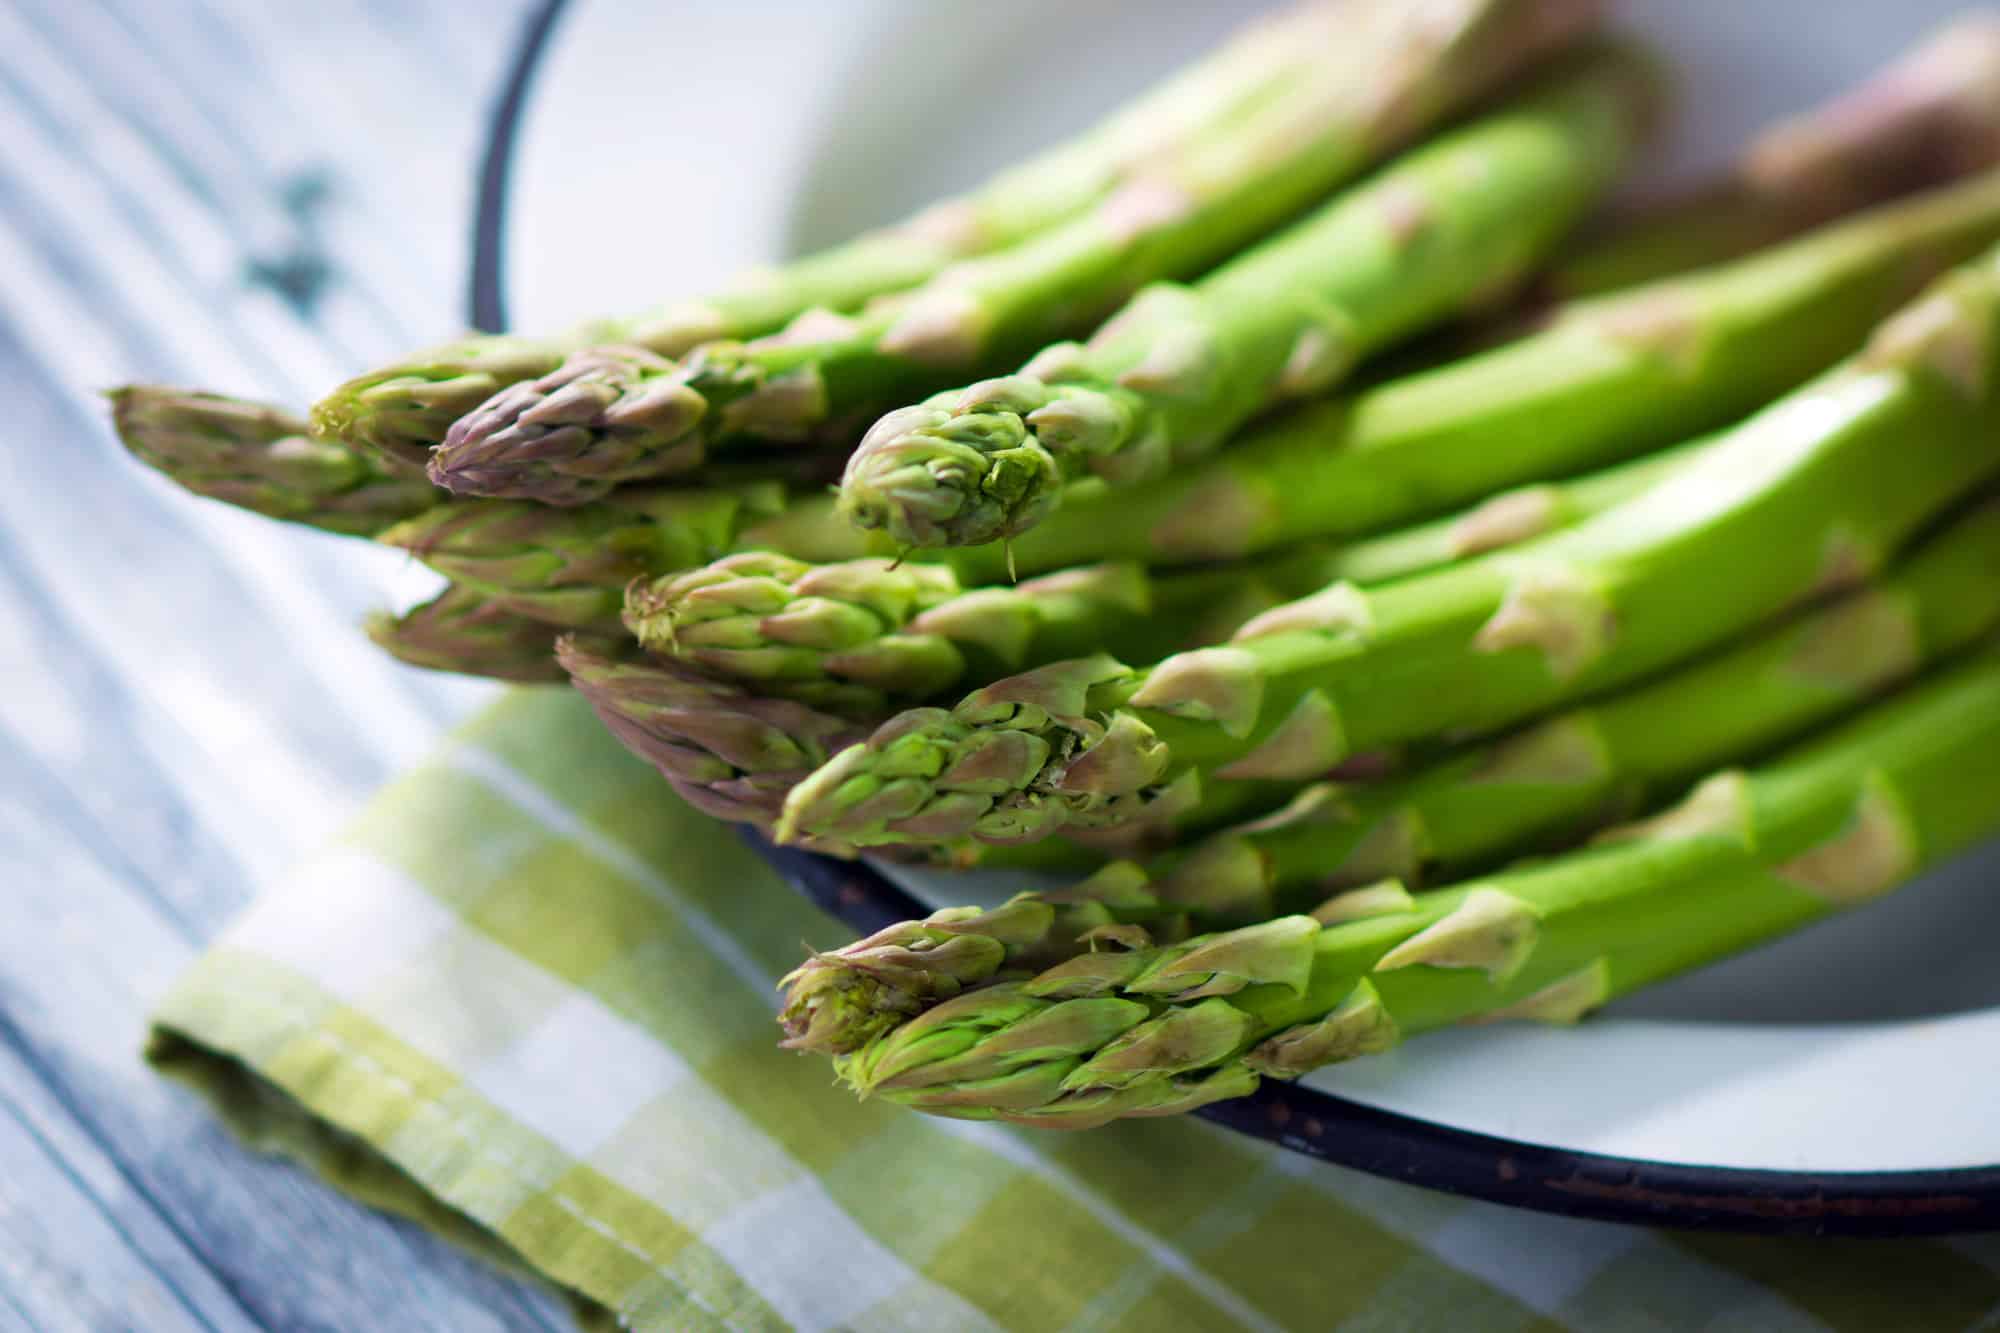 asparagus spears on a plate.